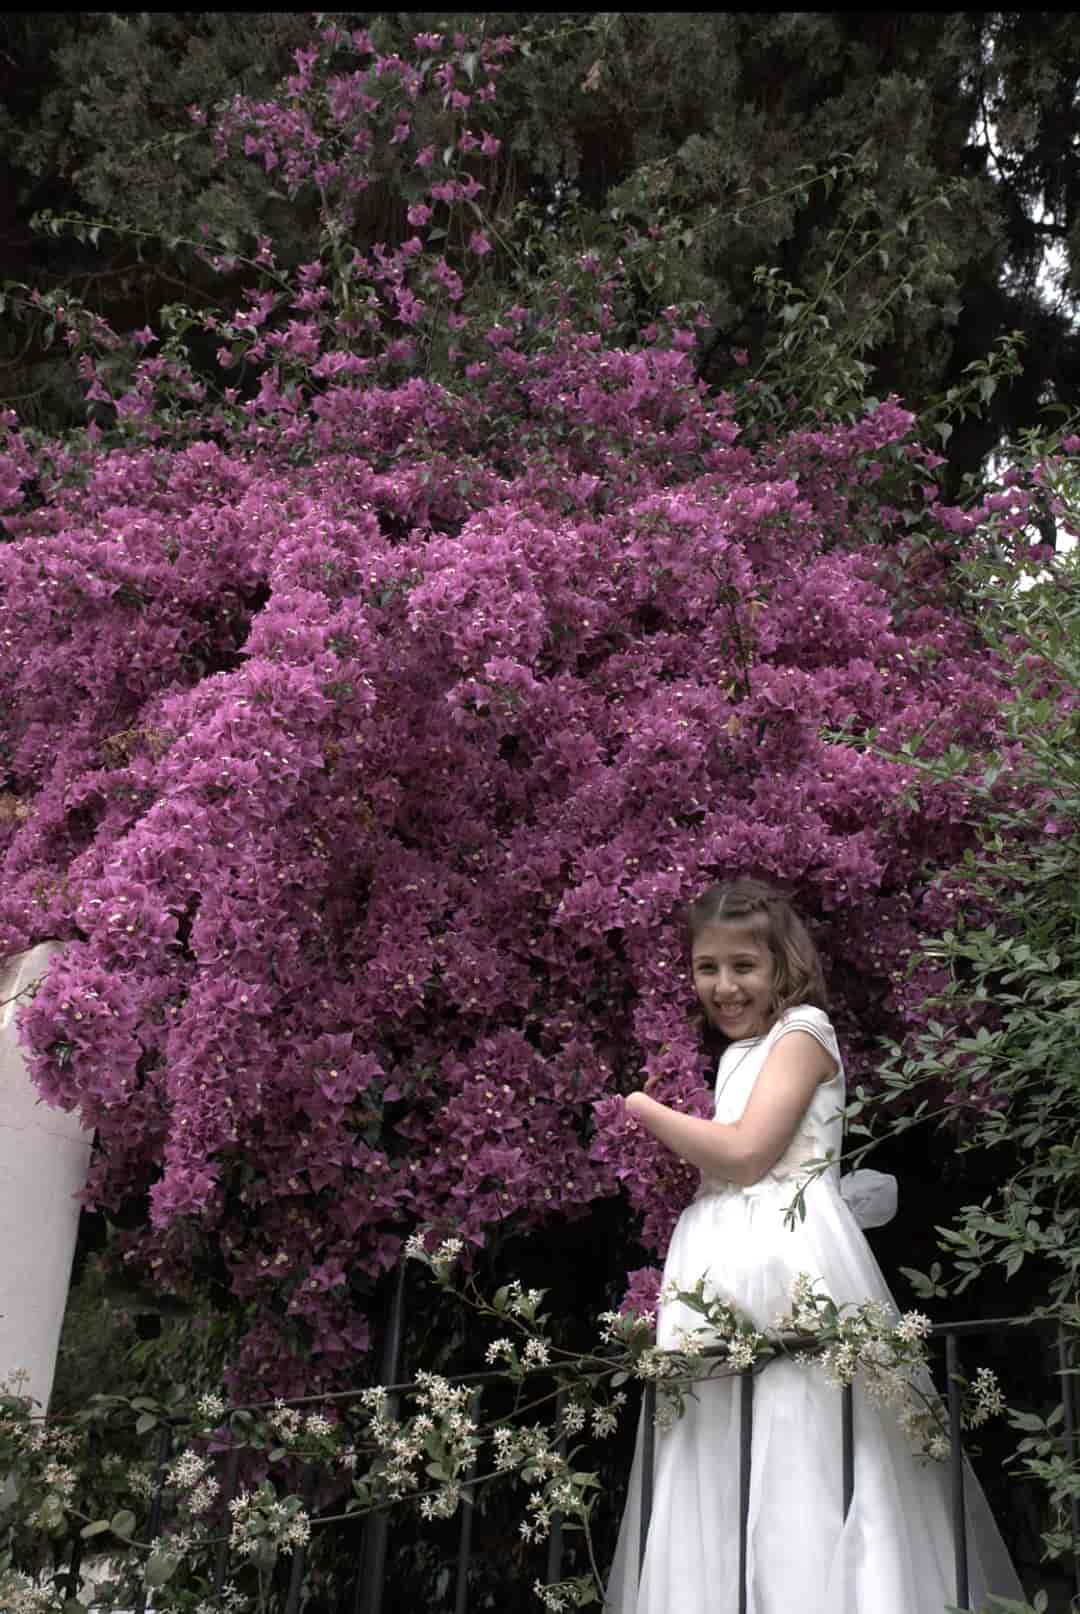 Fotografía de una niña de comunión abrazando un gran arbusto con flores rosas